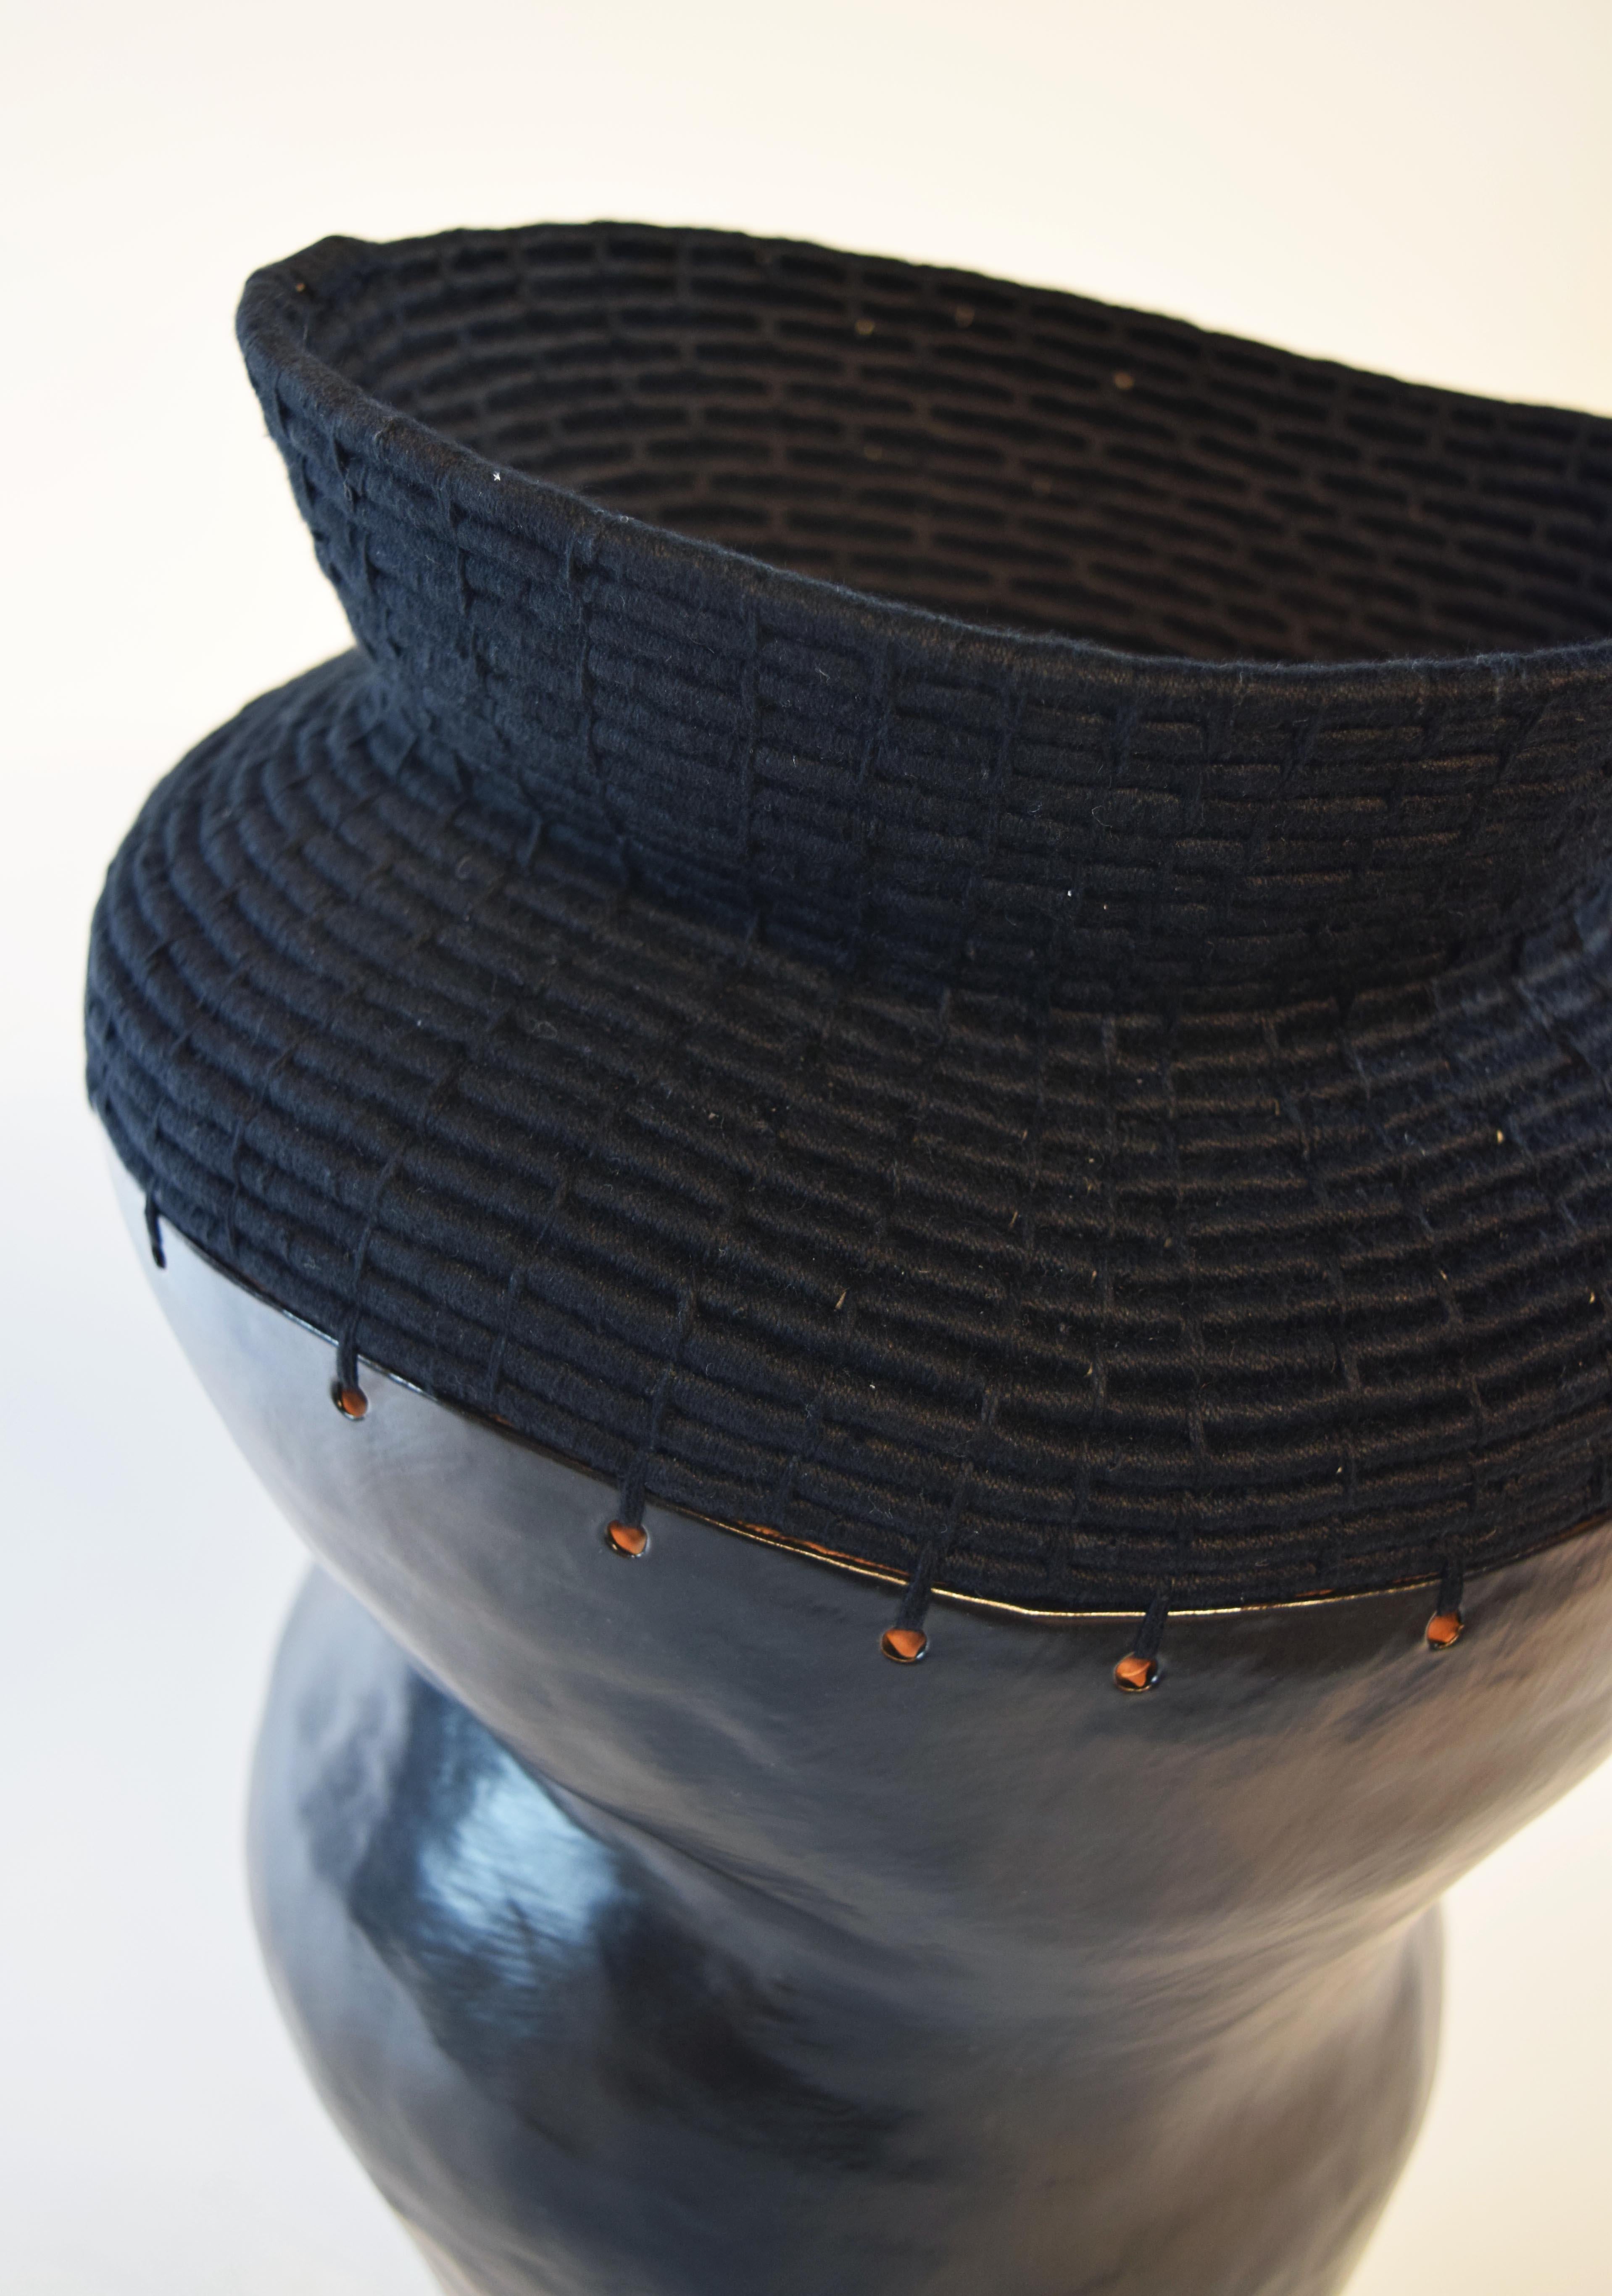 Fait main Vase unique en céramique et fibre tissée #762, glaçure noire satinée, coton noir en vente